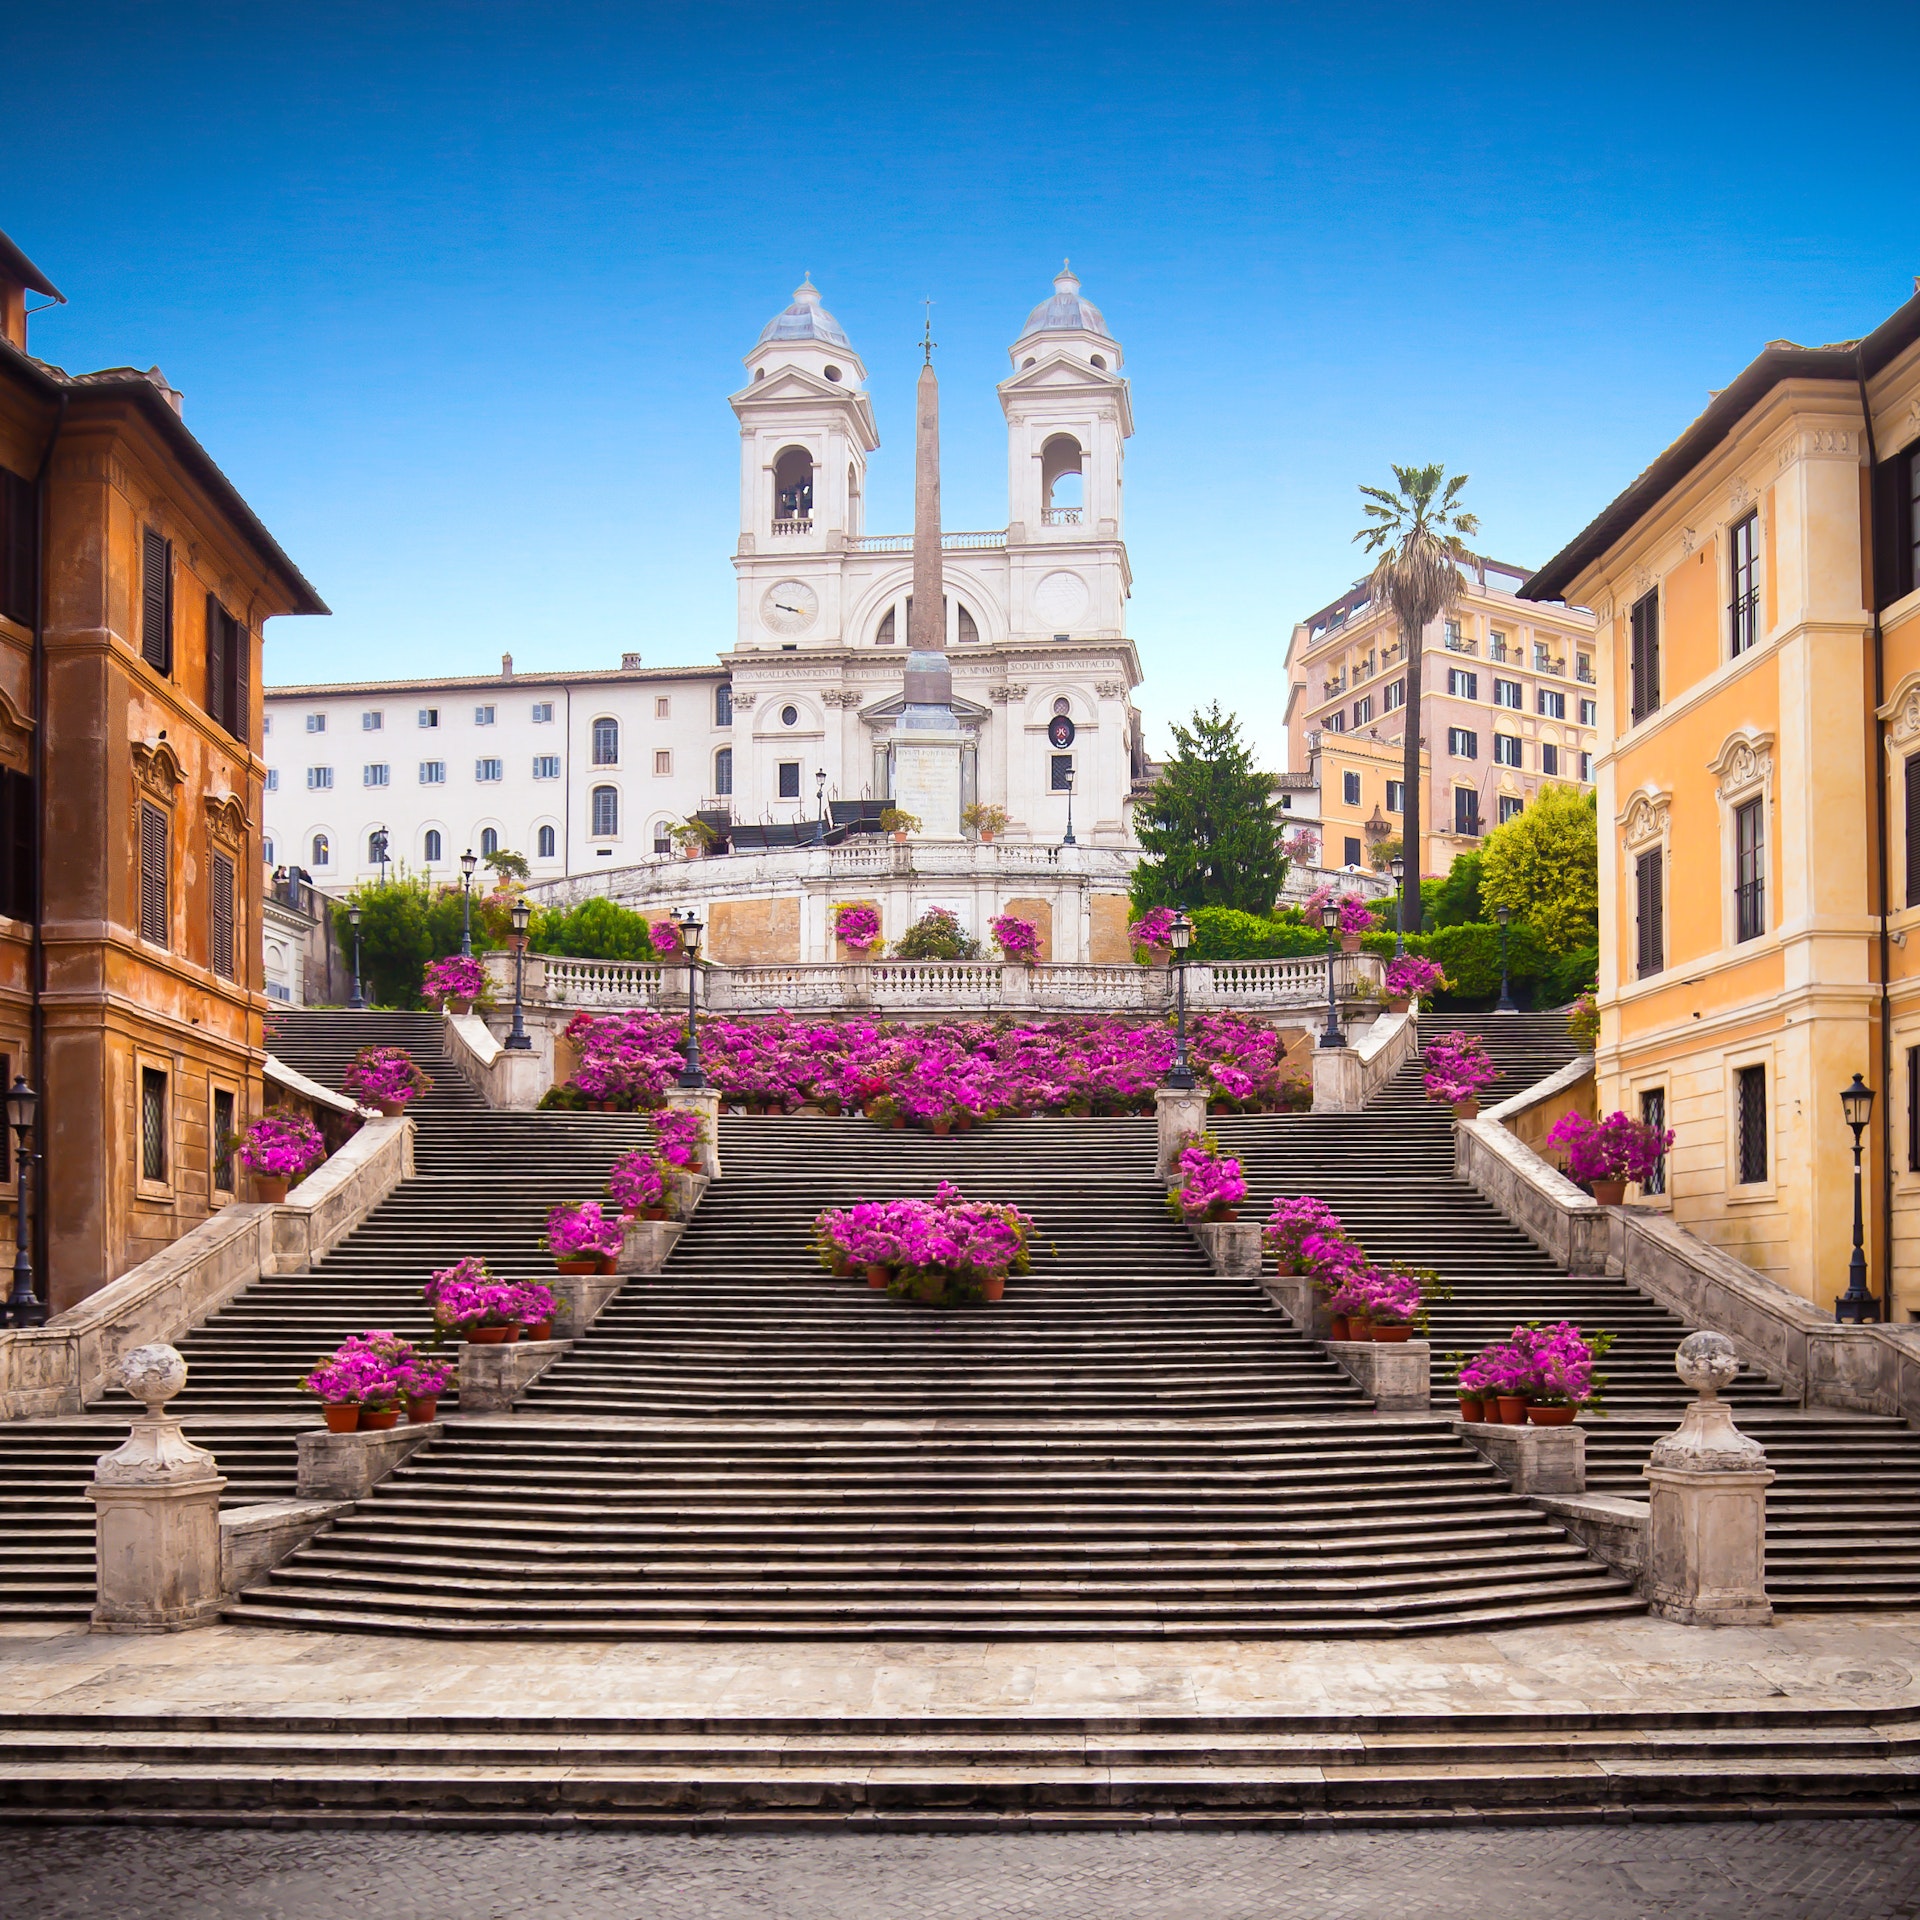  Quin és el millor moment per anar a Roma?